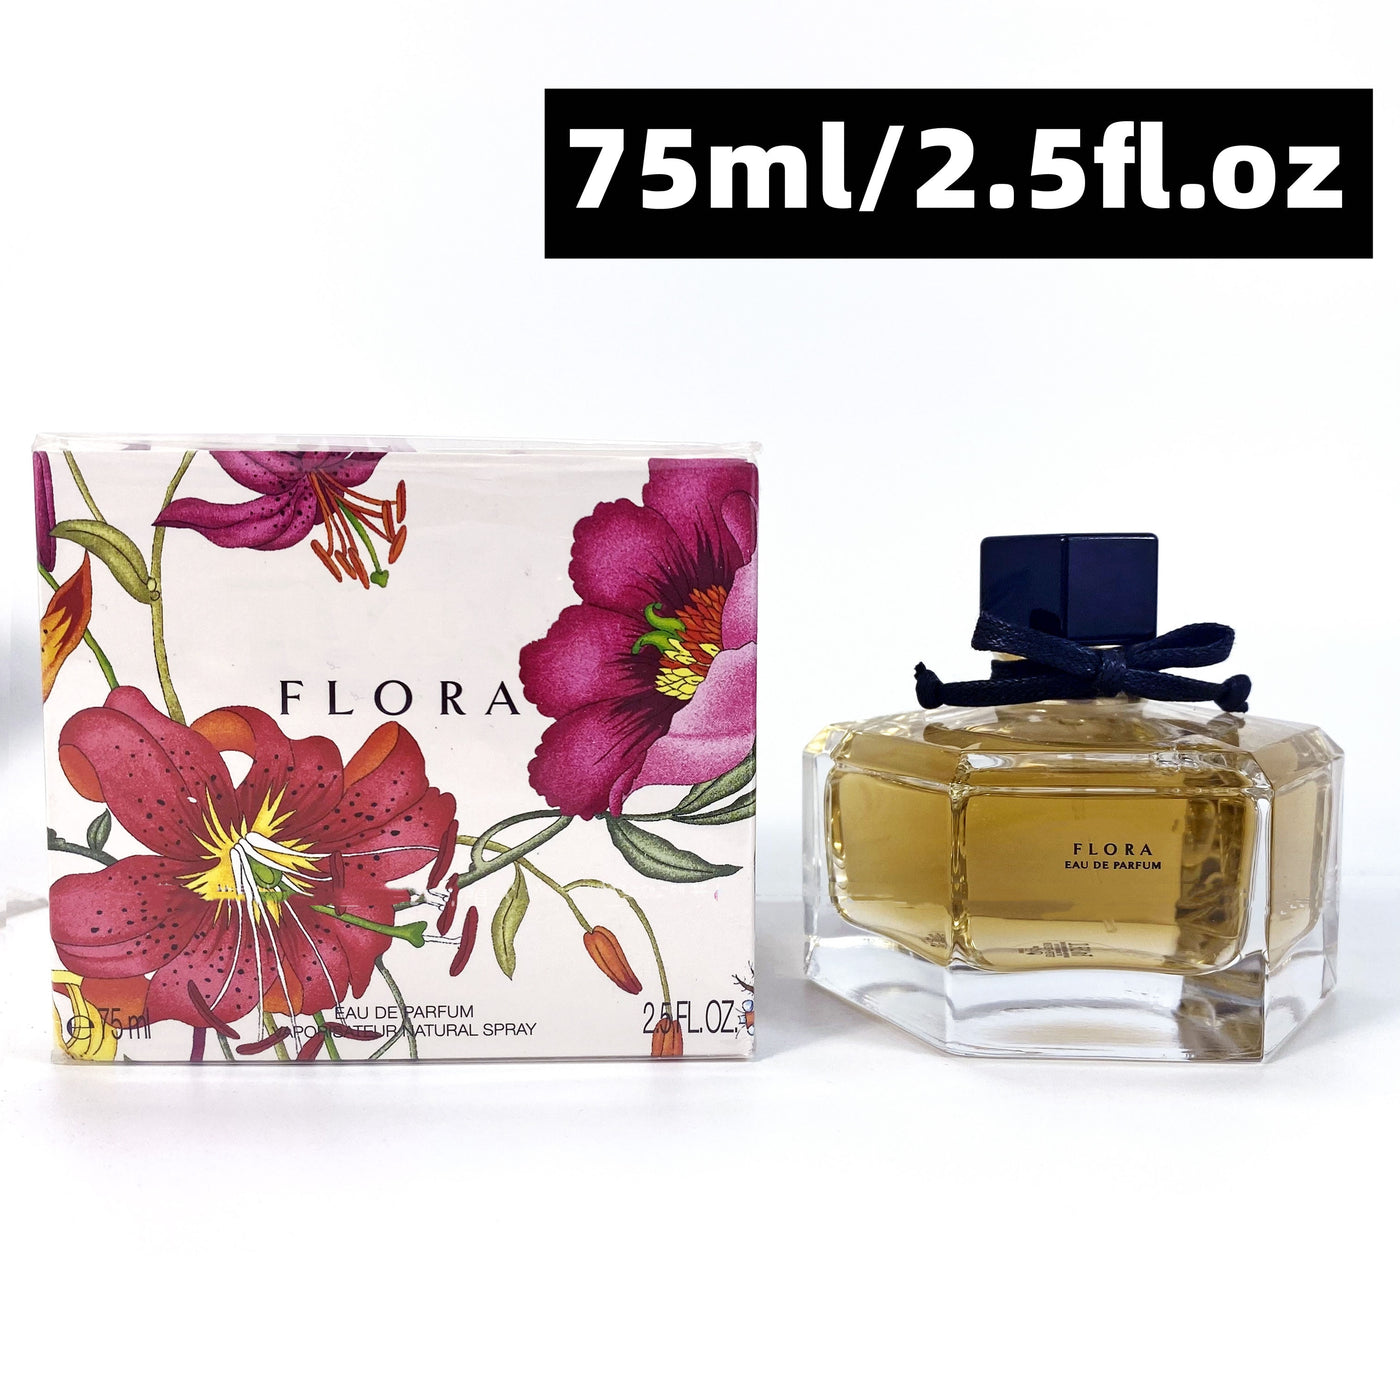 Hot Brands Flora Original Eau De Perfumes